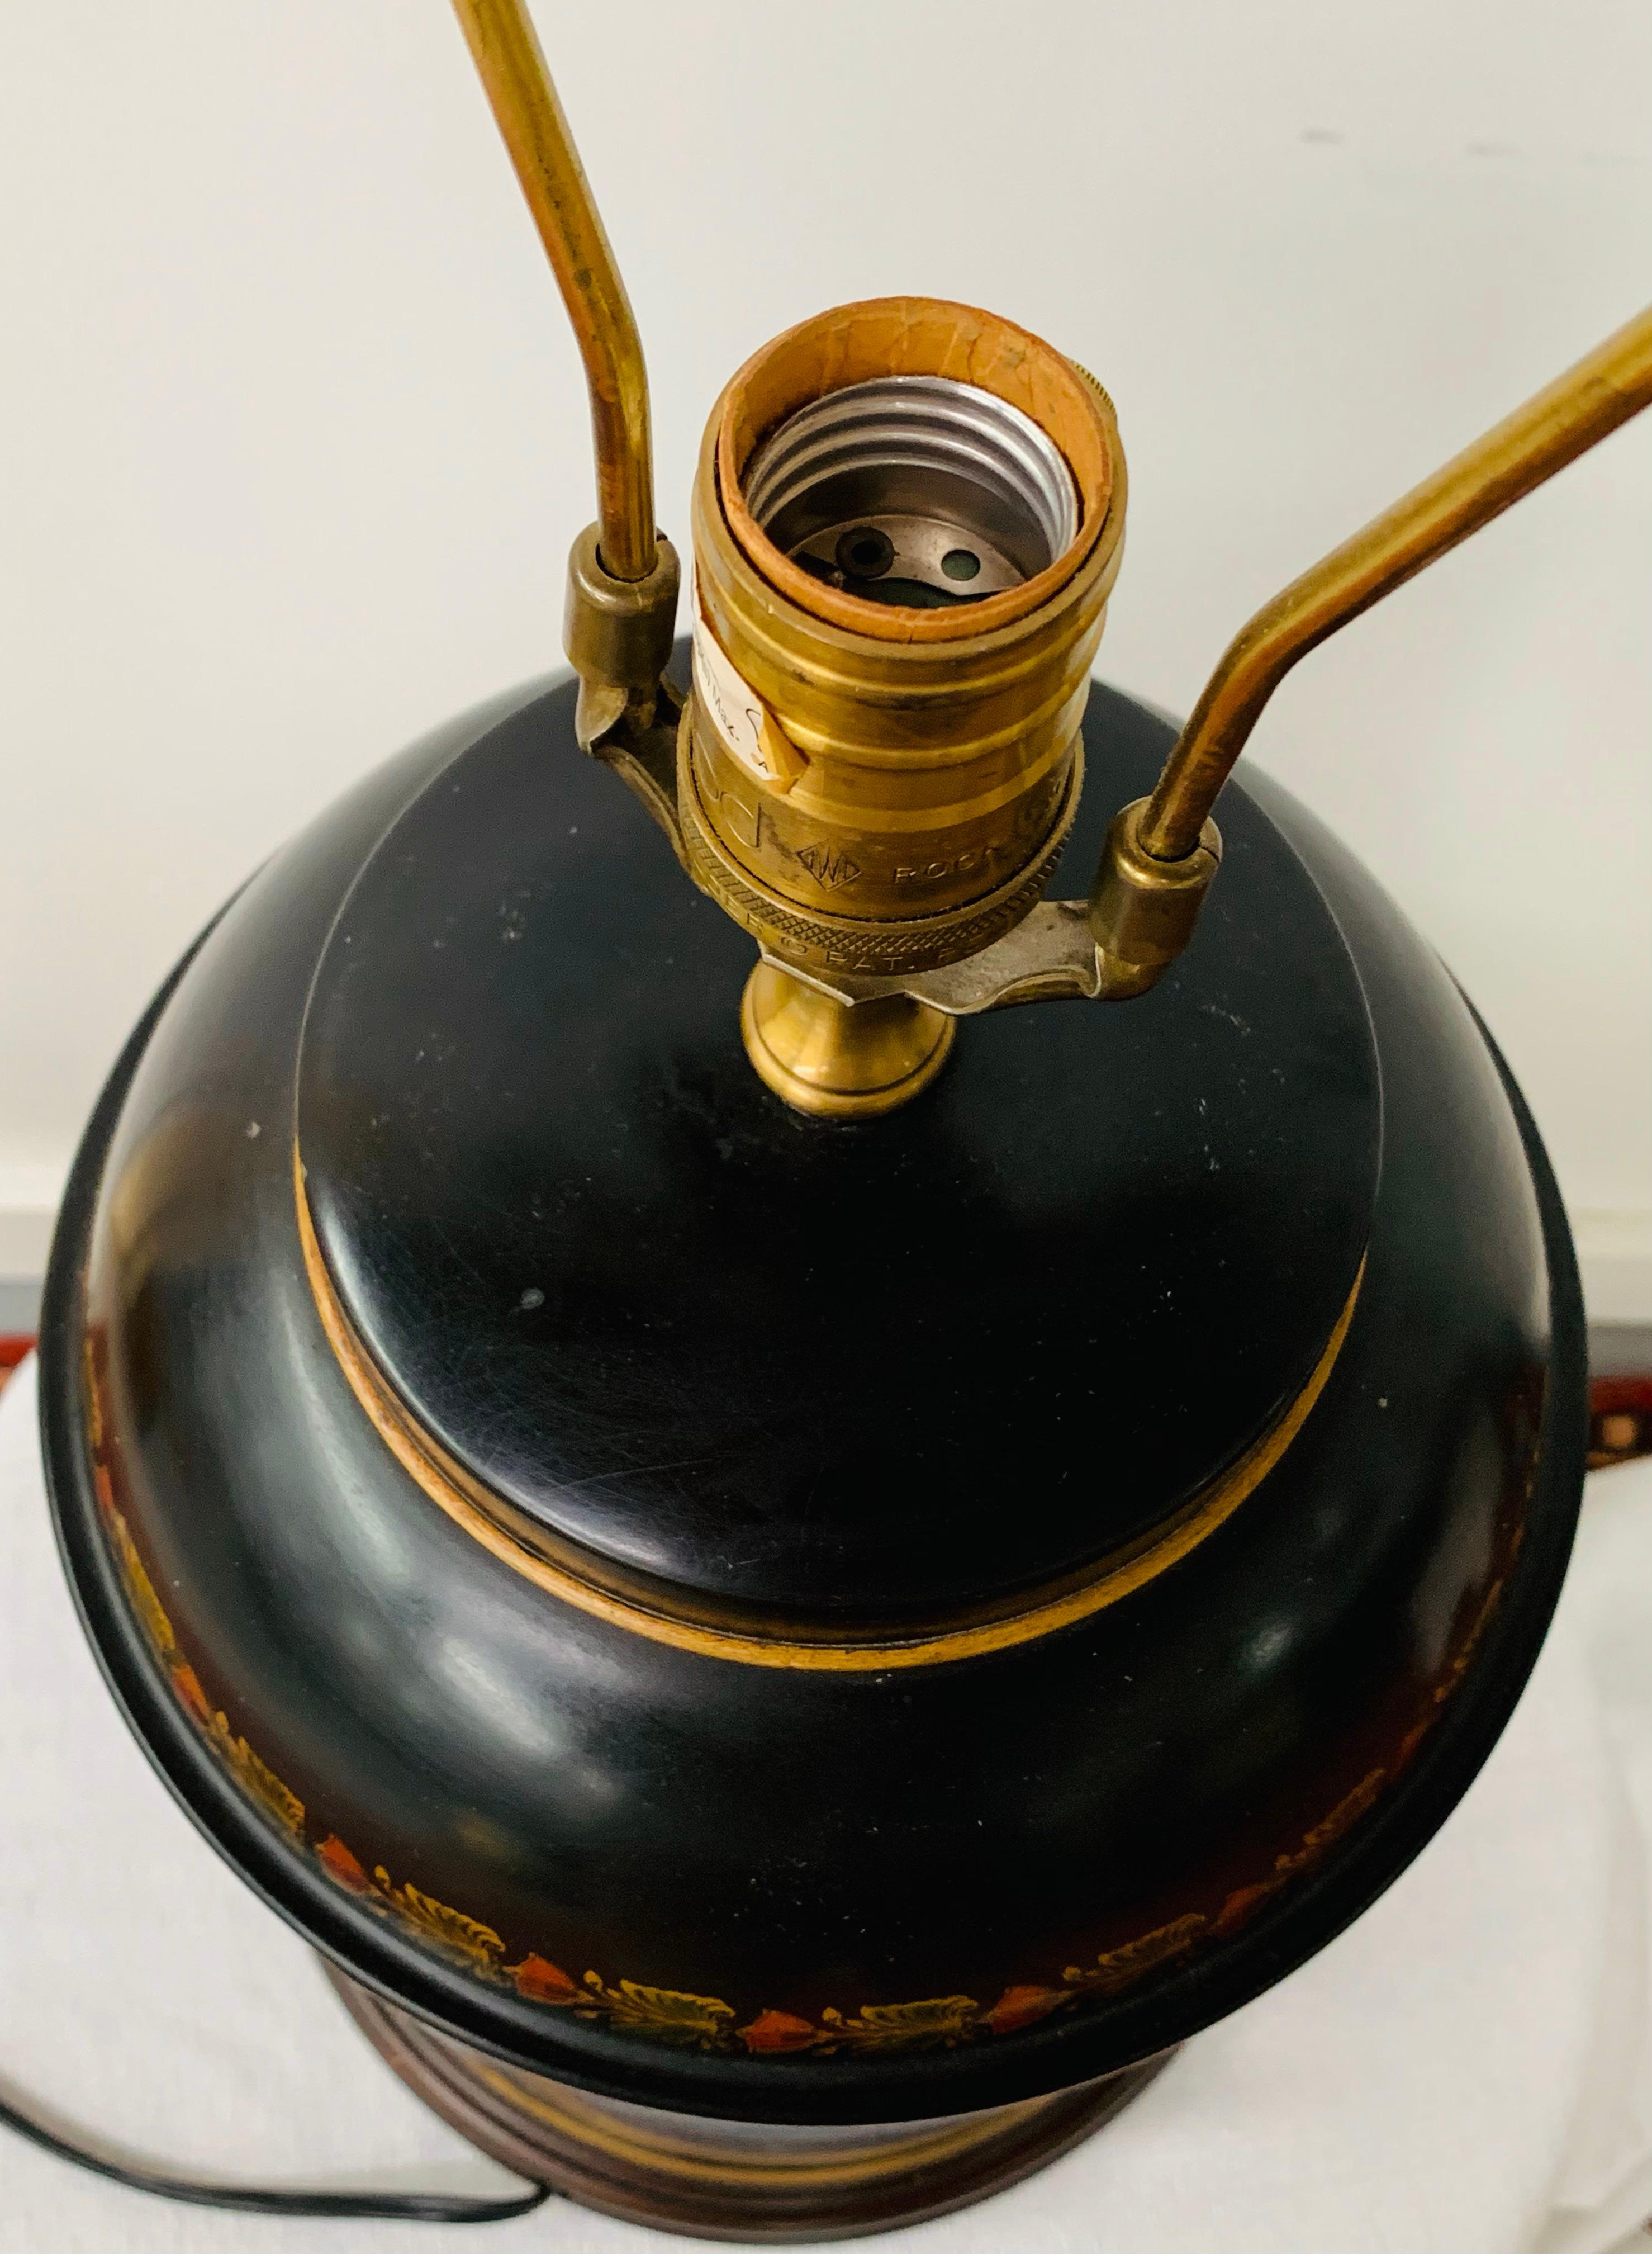 Cette magnifique lampe chinoise de forme cylindrique, de type thé-caddy noir, présente une gravure et un design raffinés. La base représente une scène de deux femmes discutant et se prélassant dans un beau jardin, avec des motifs de fleurs et